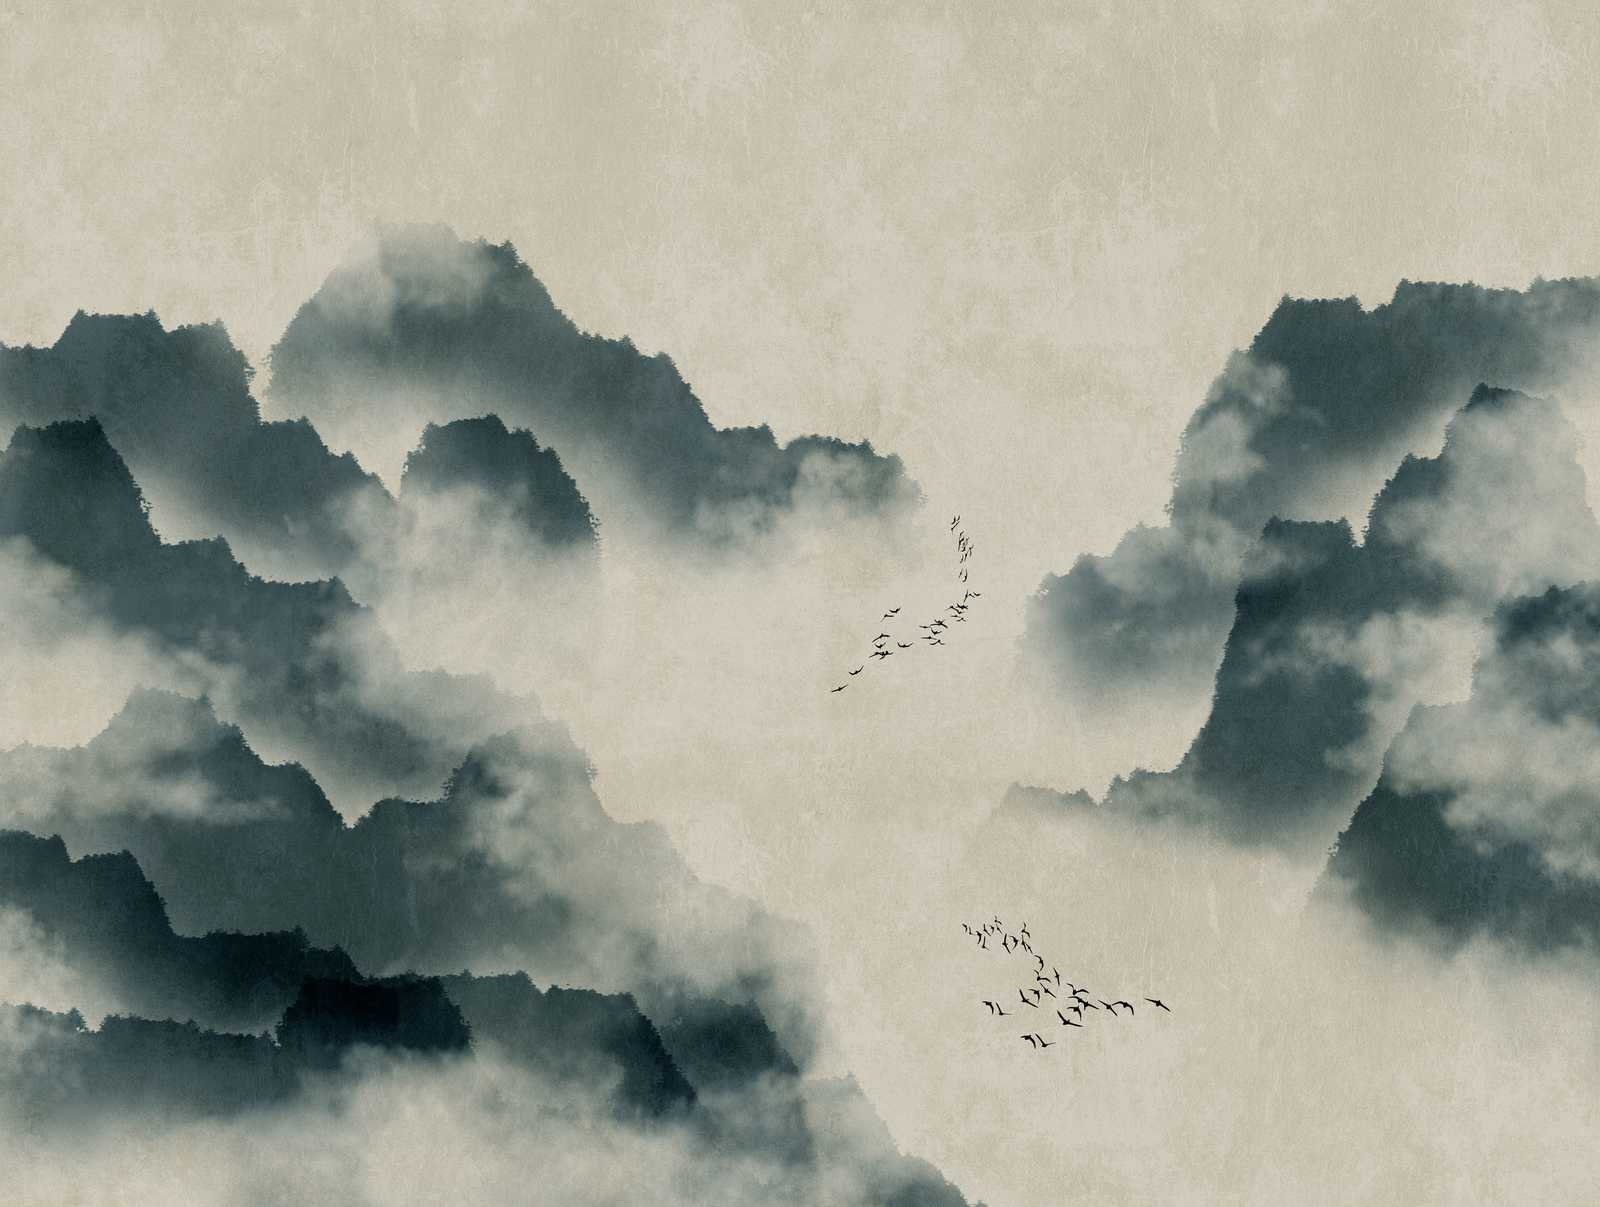             Behang nieuwigheid | aquarel motief behang met bergen, mist & zwerm vogels
        